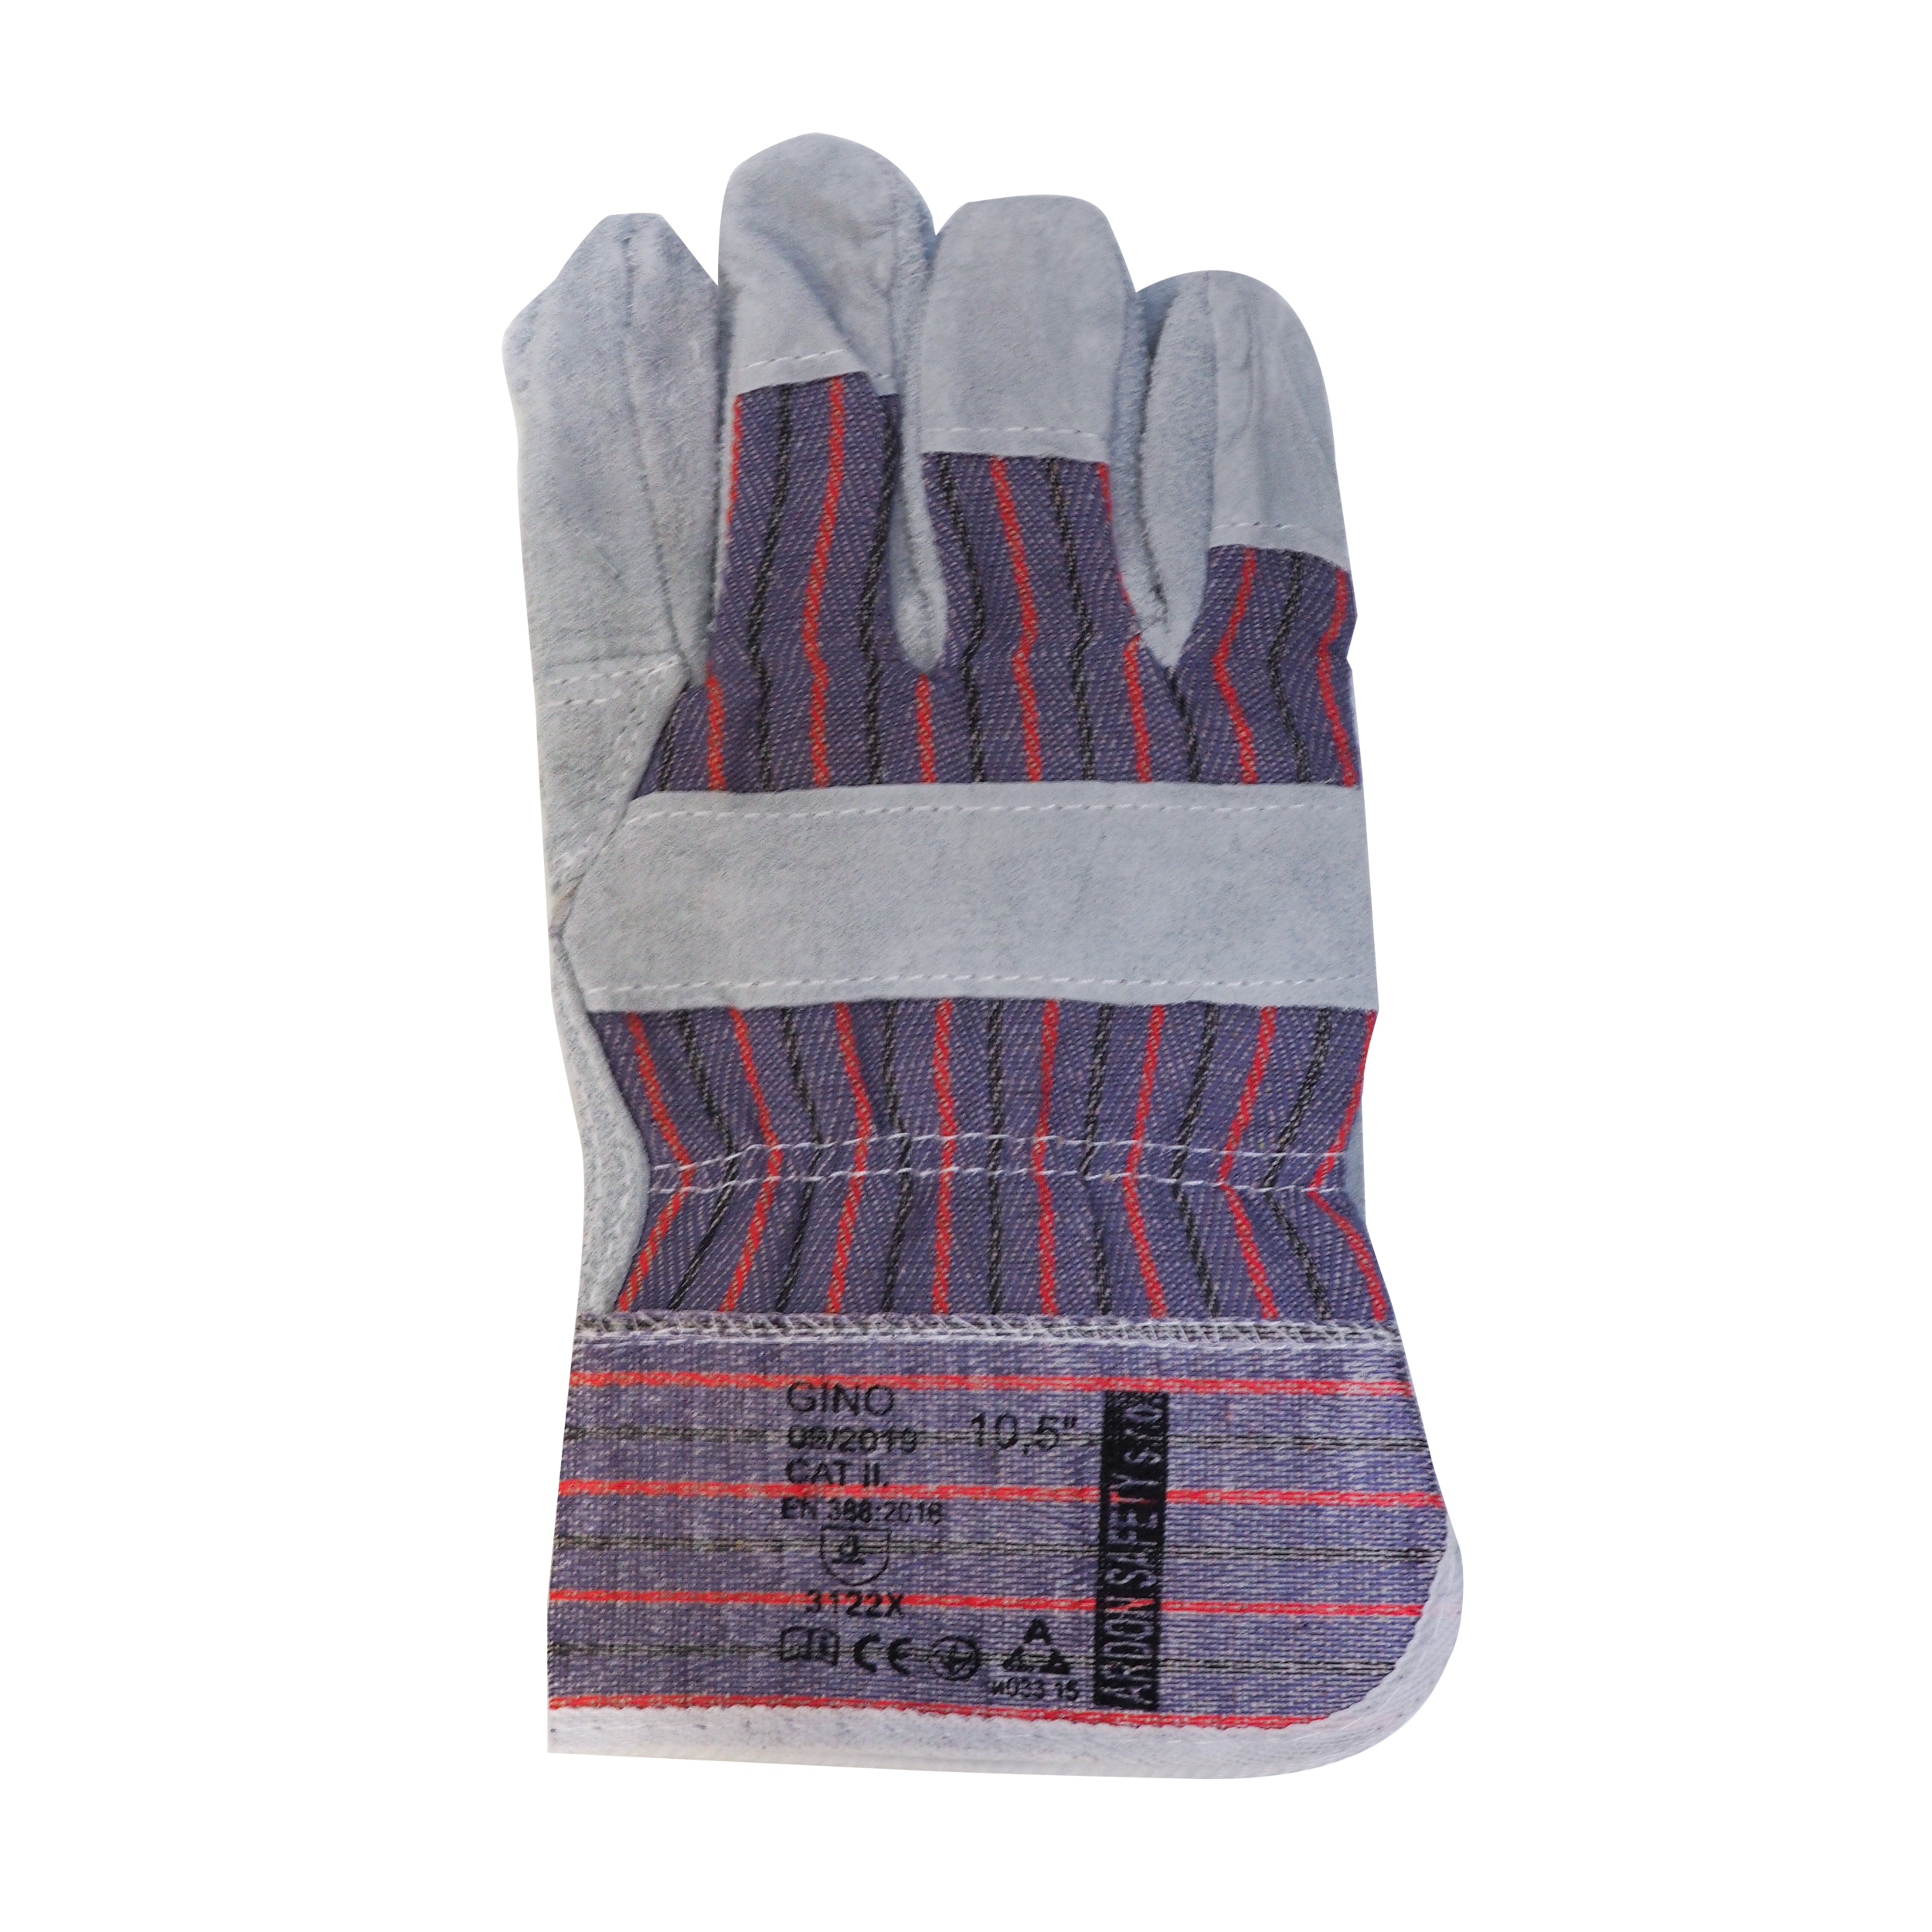 rukavice GINO, kožené, standard, velikost 10,5 0.14 Kg TOP Sklad4 600121 64